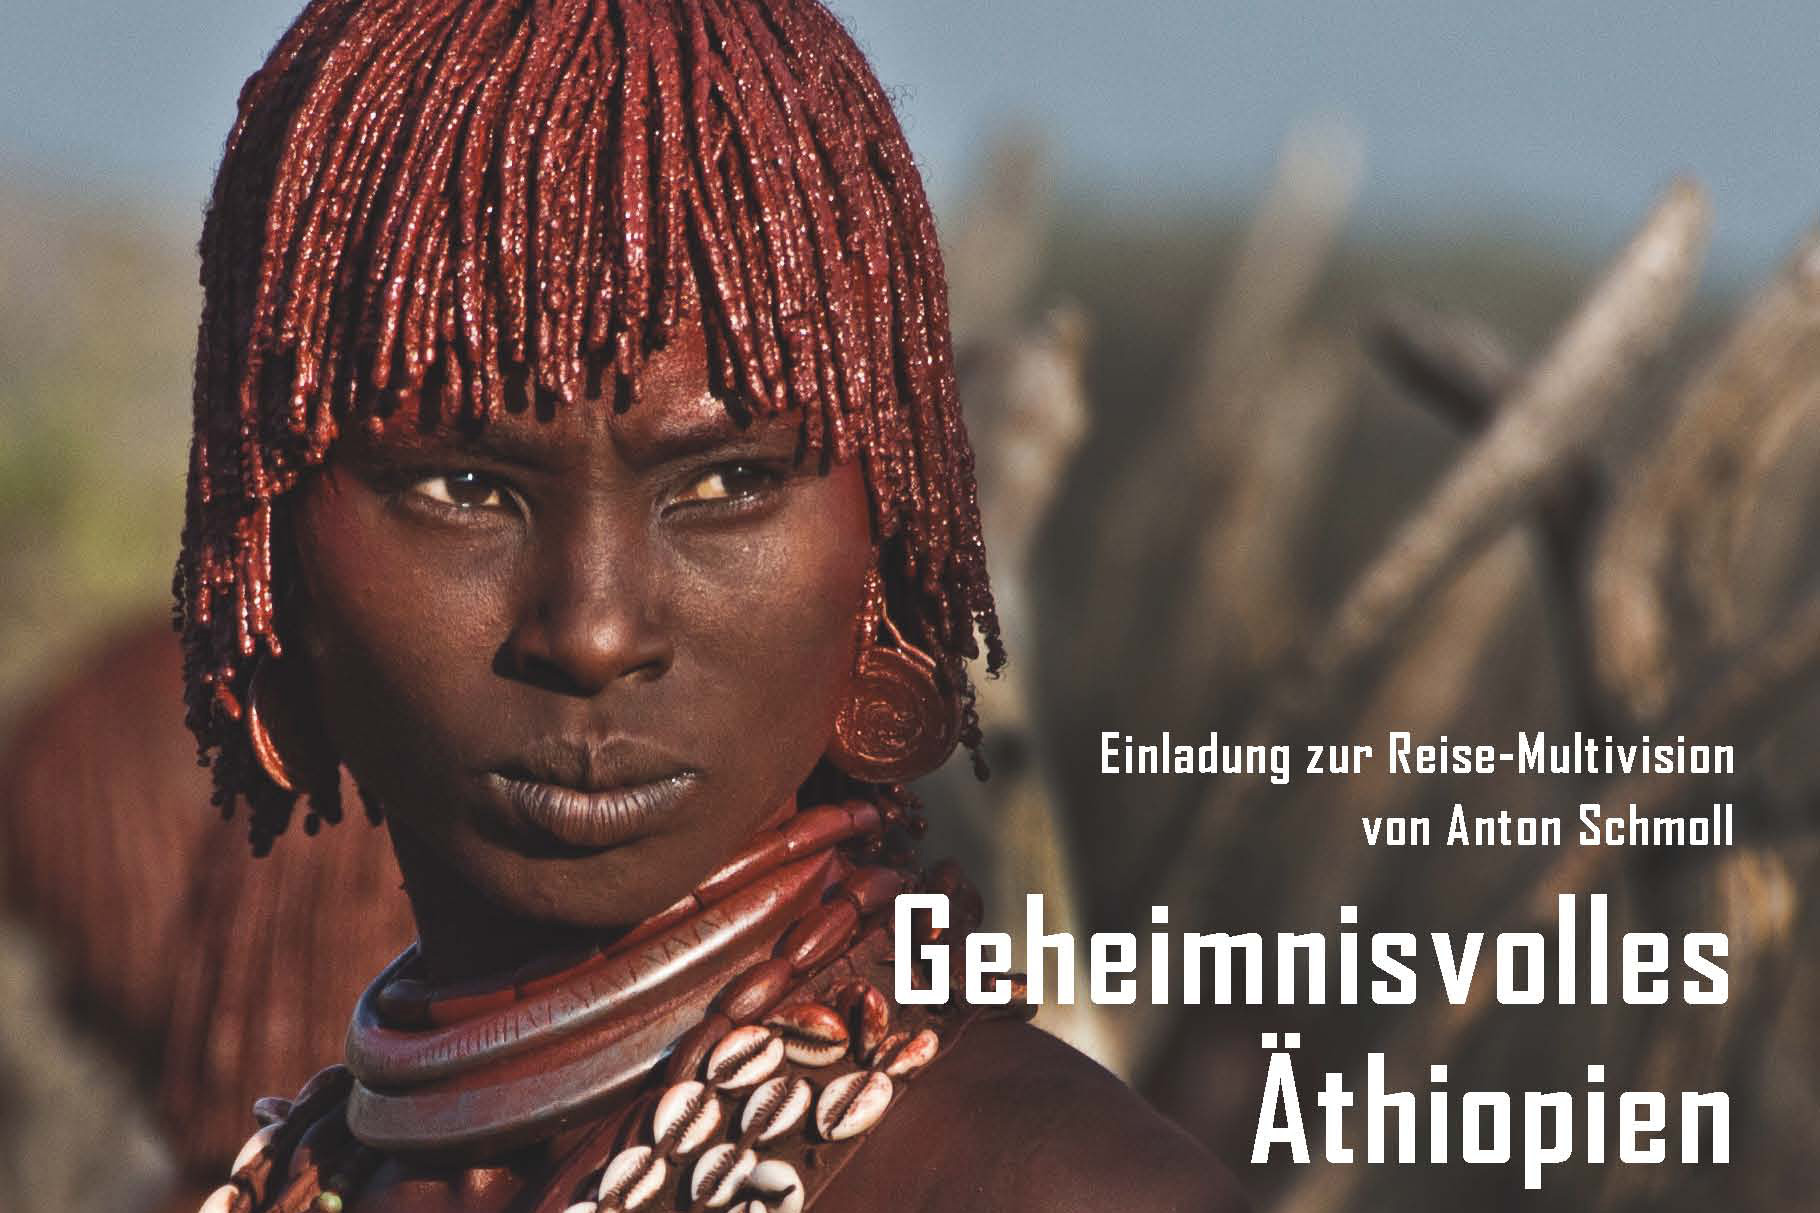 © Anton Schmoll - Äthiopien